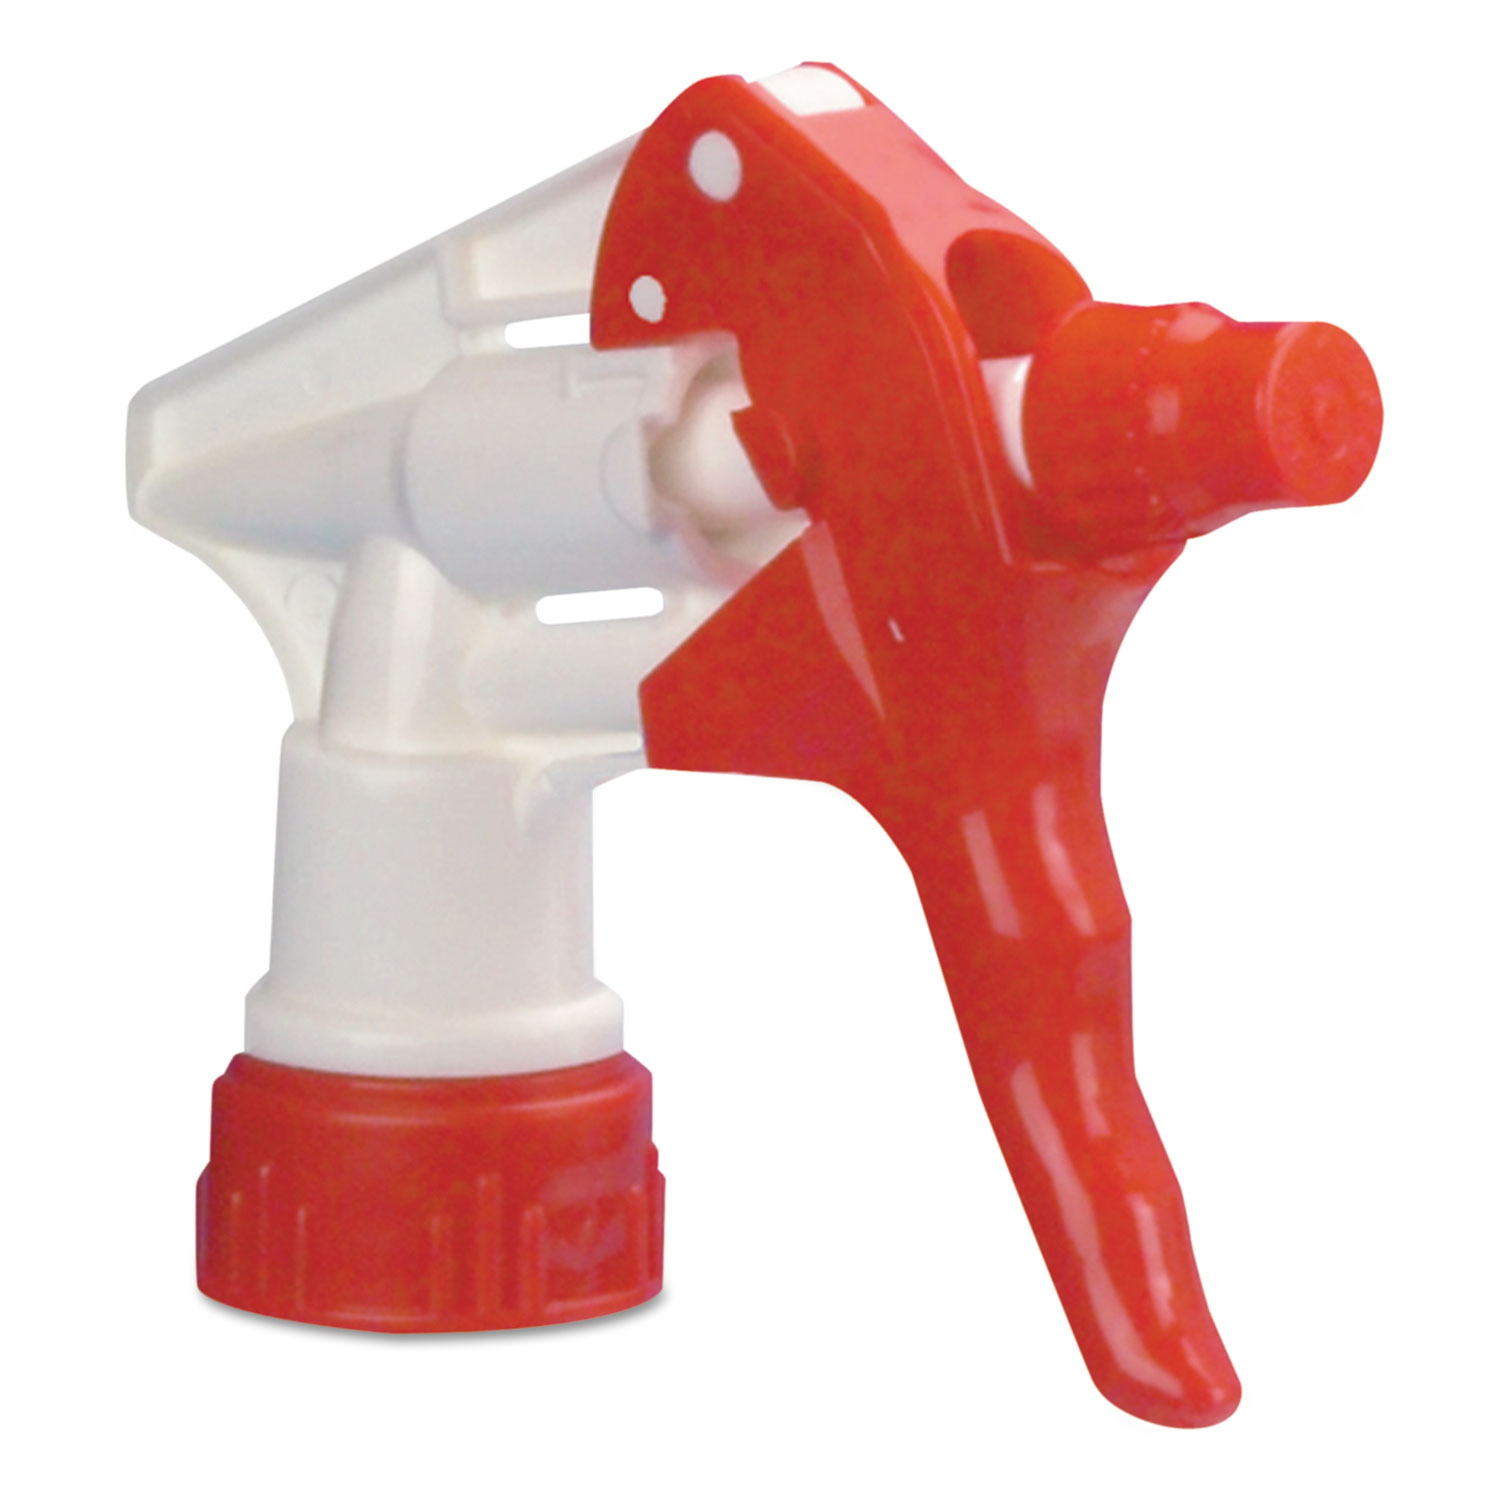 Trigger Sprayer 250 f/24 oz Bottles, Red/White, 8